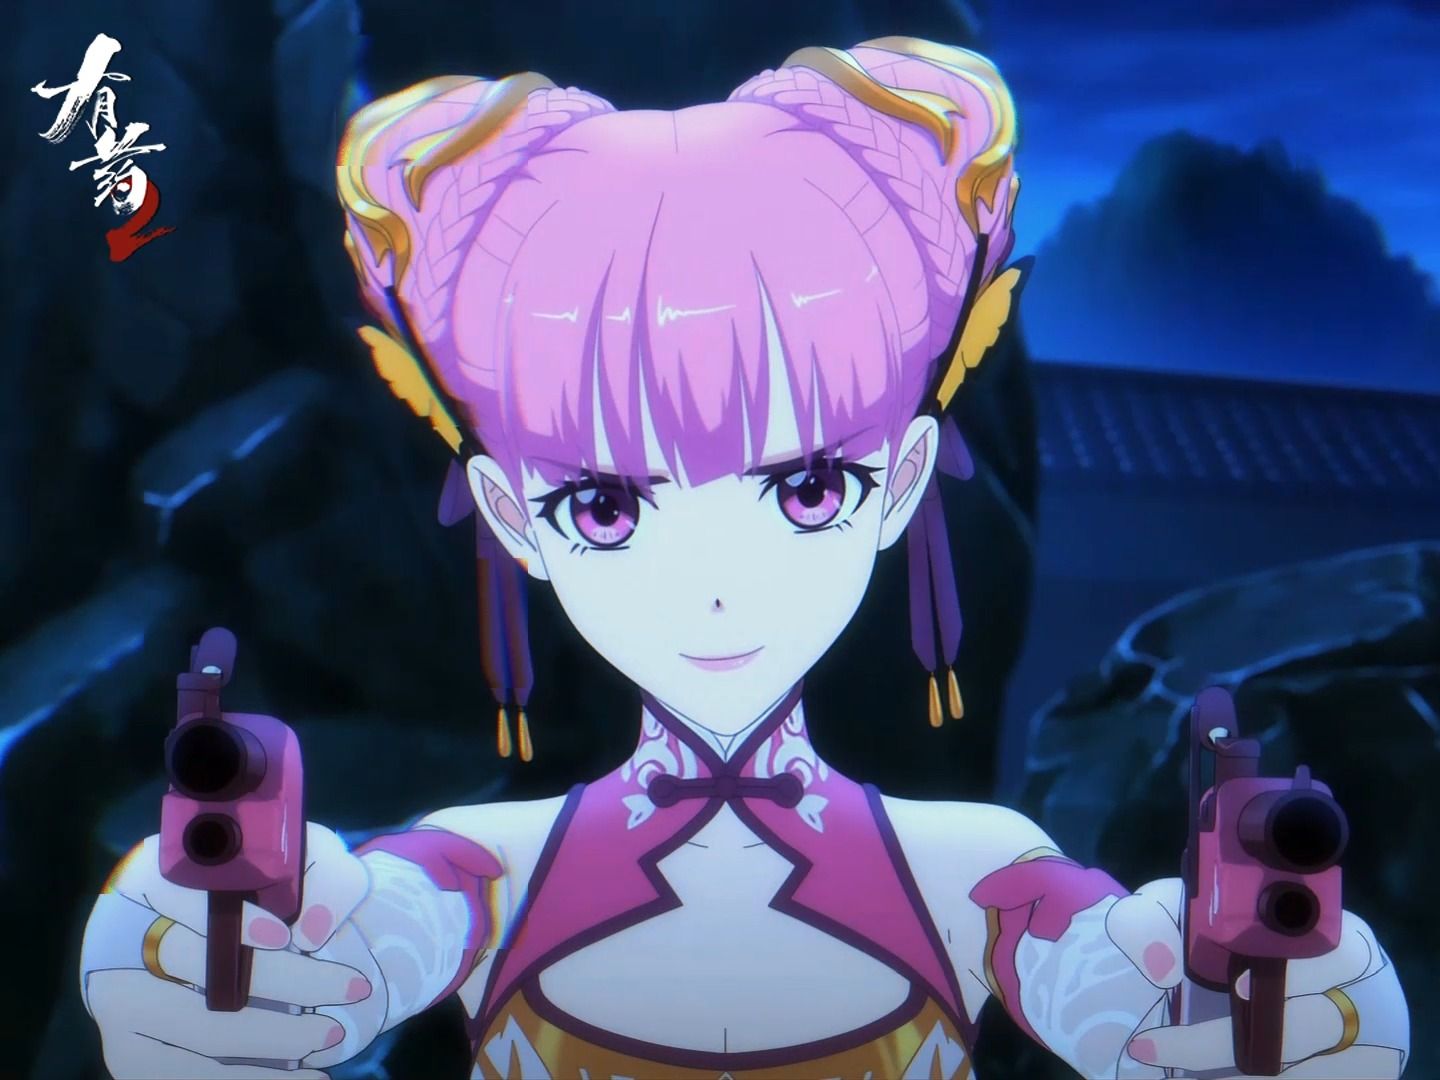 【有药2动画】谁能拒绝拿枪的粉毛萝莉女仆呢？